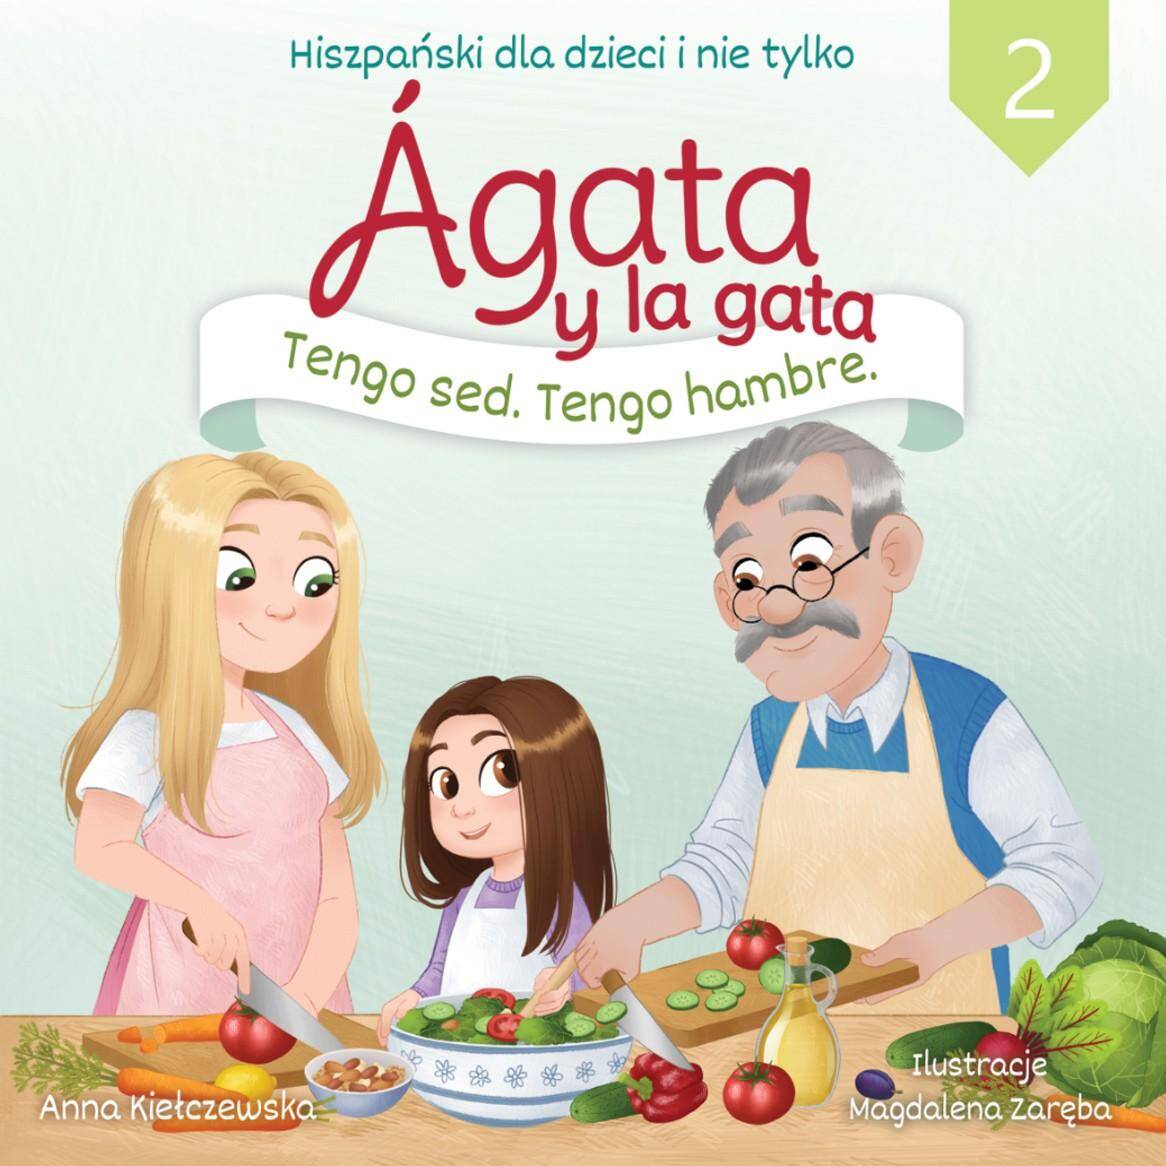 Agata y la gata. Hiszpański dla dzieci i nie tylko. Część 2